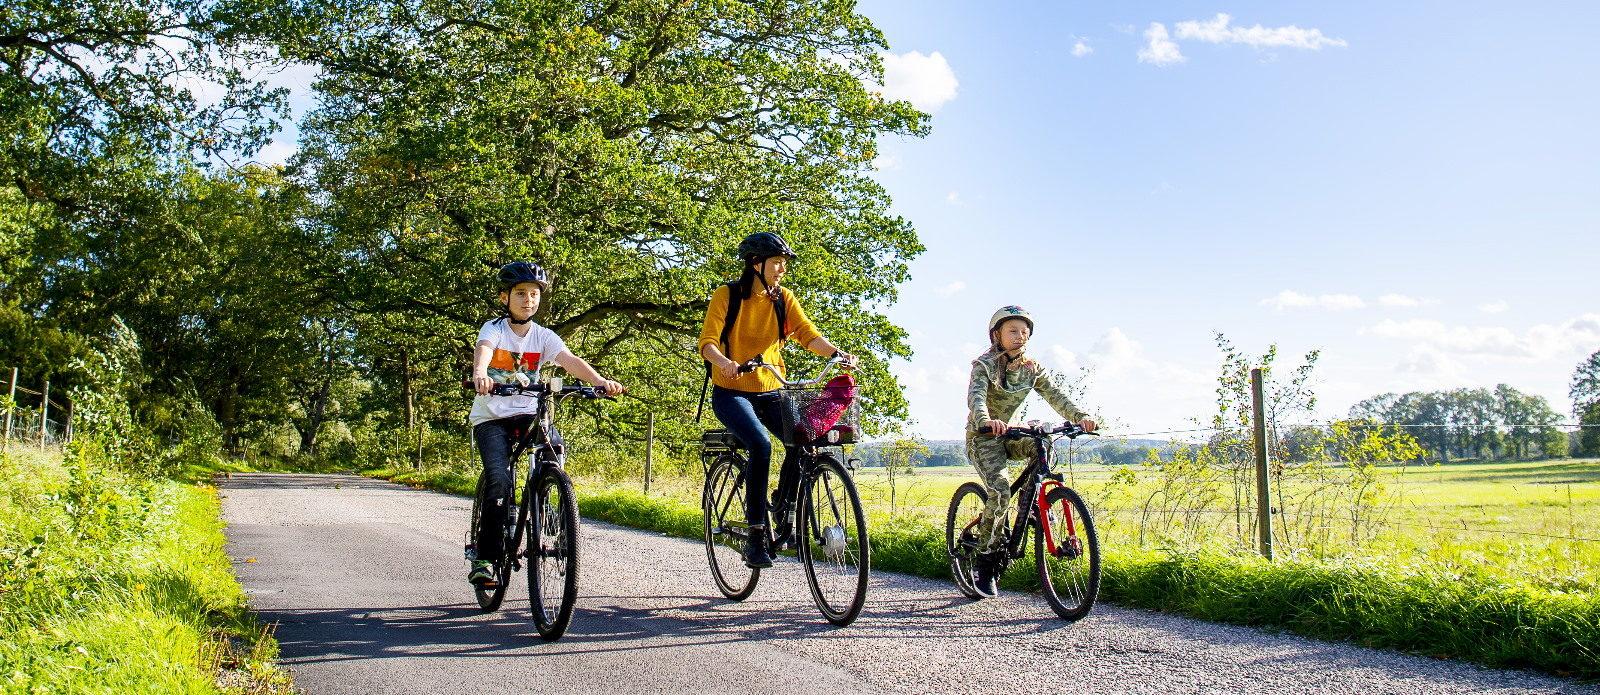 Järva Park Hotel inleder samarbete med Bike By Sweden